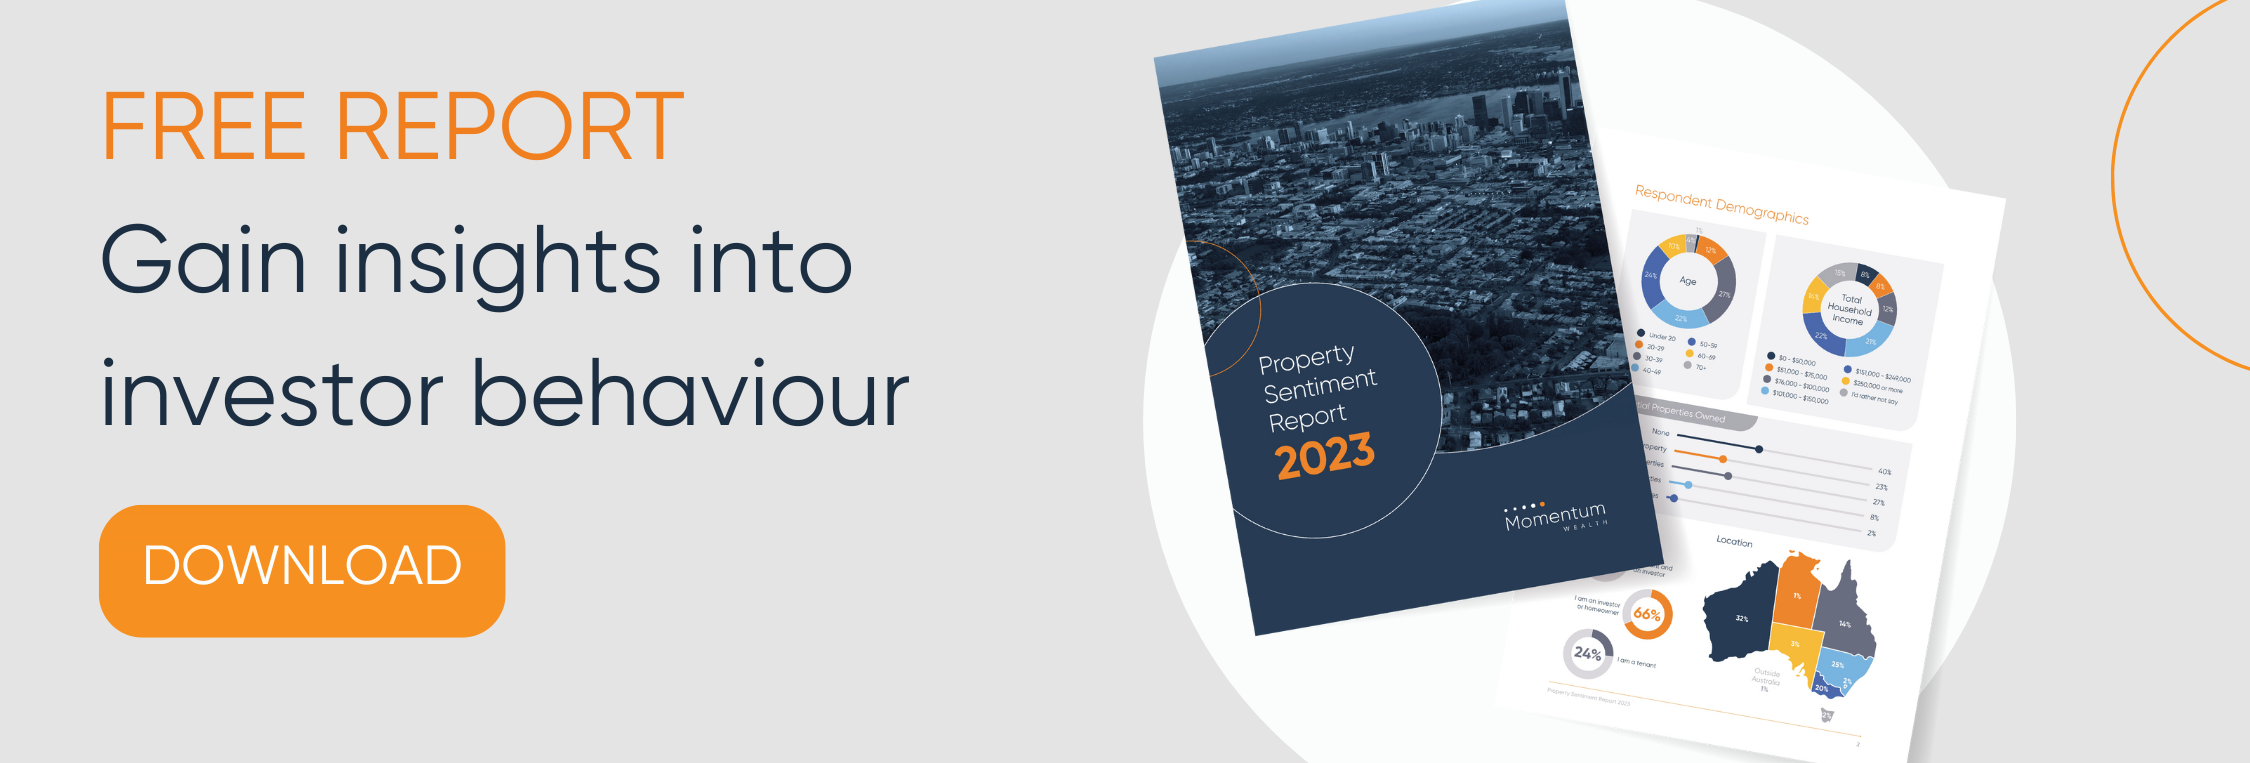 Property Sentiment Report 2023